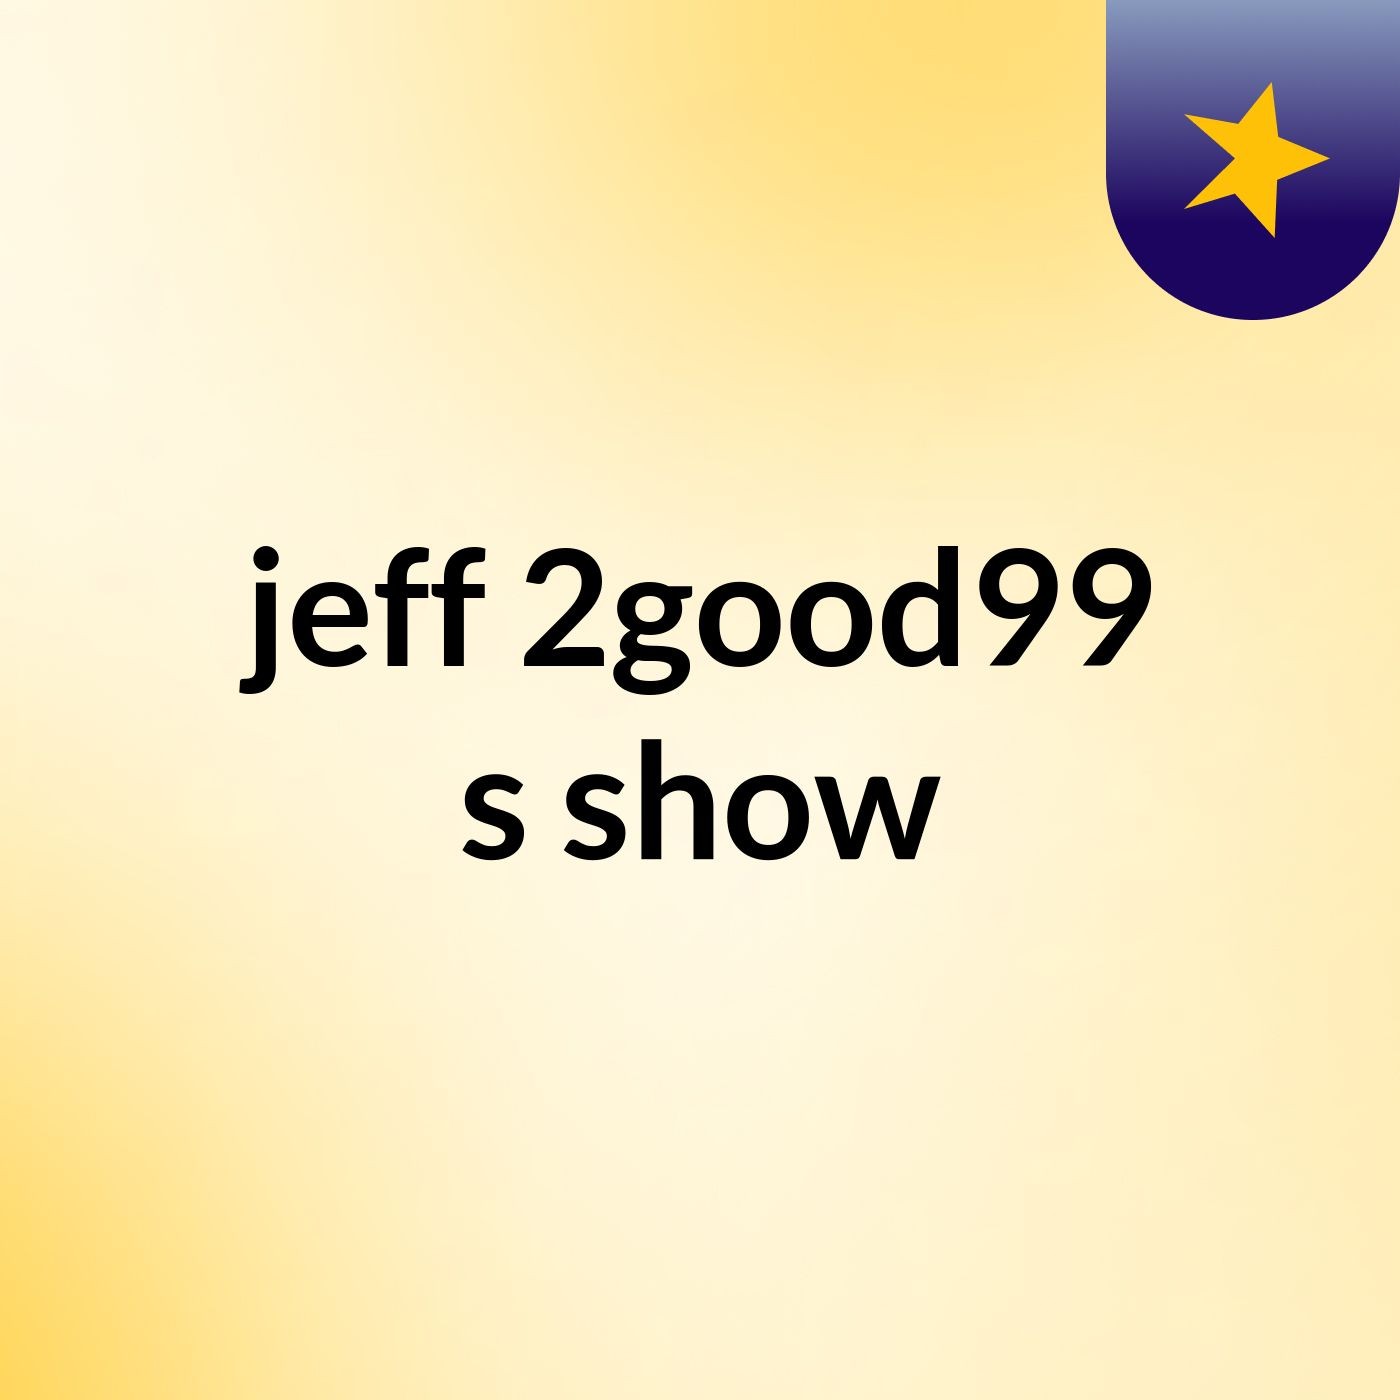 jeff 2good99's show